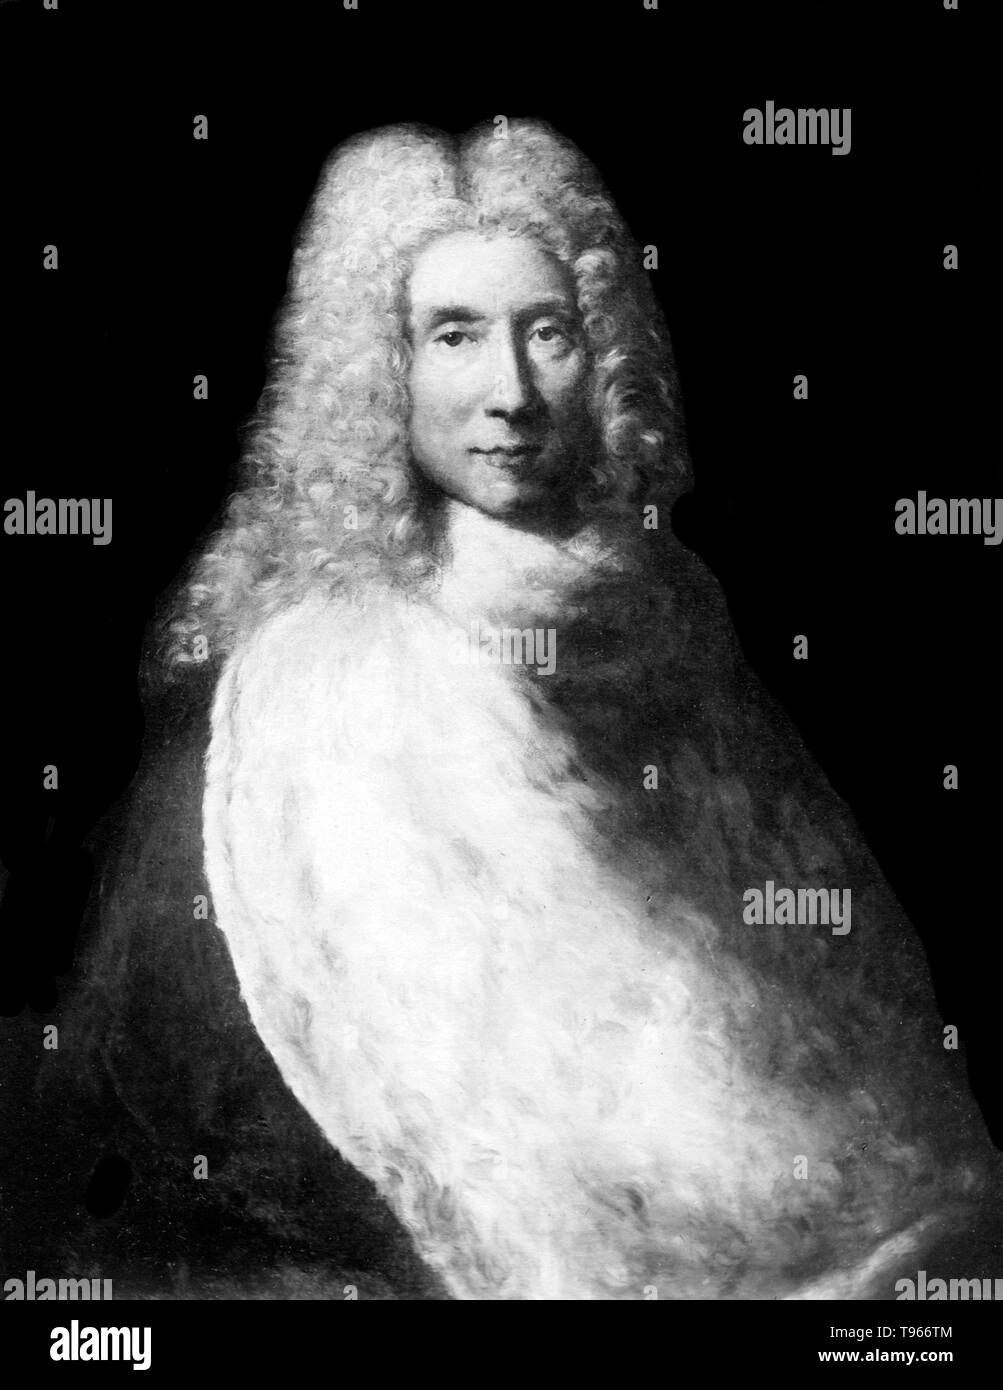 Il soggetto di questo ritratto da Jean Francois de Troy, è stato originariamente registrato come anonimo, ma in seguito ha detto di essere Andry; secondo la ricerca moderna, il suo oggetto non può essere stabilito in maniera affidabile e non è certo il ritratto di Andry. Nicolas Andry de Bois-Regard (1658 - 13 Maggio 1742) era un medico francese e scrittore. Il suo primo libro è stato pubblicato nel 1700, e tradotto in inglese nel 1701 come un conto dell'allevamento di bachi nei corpi umani. Foto Stock